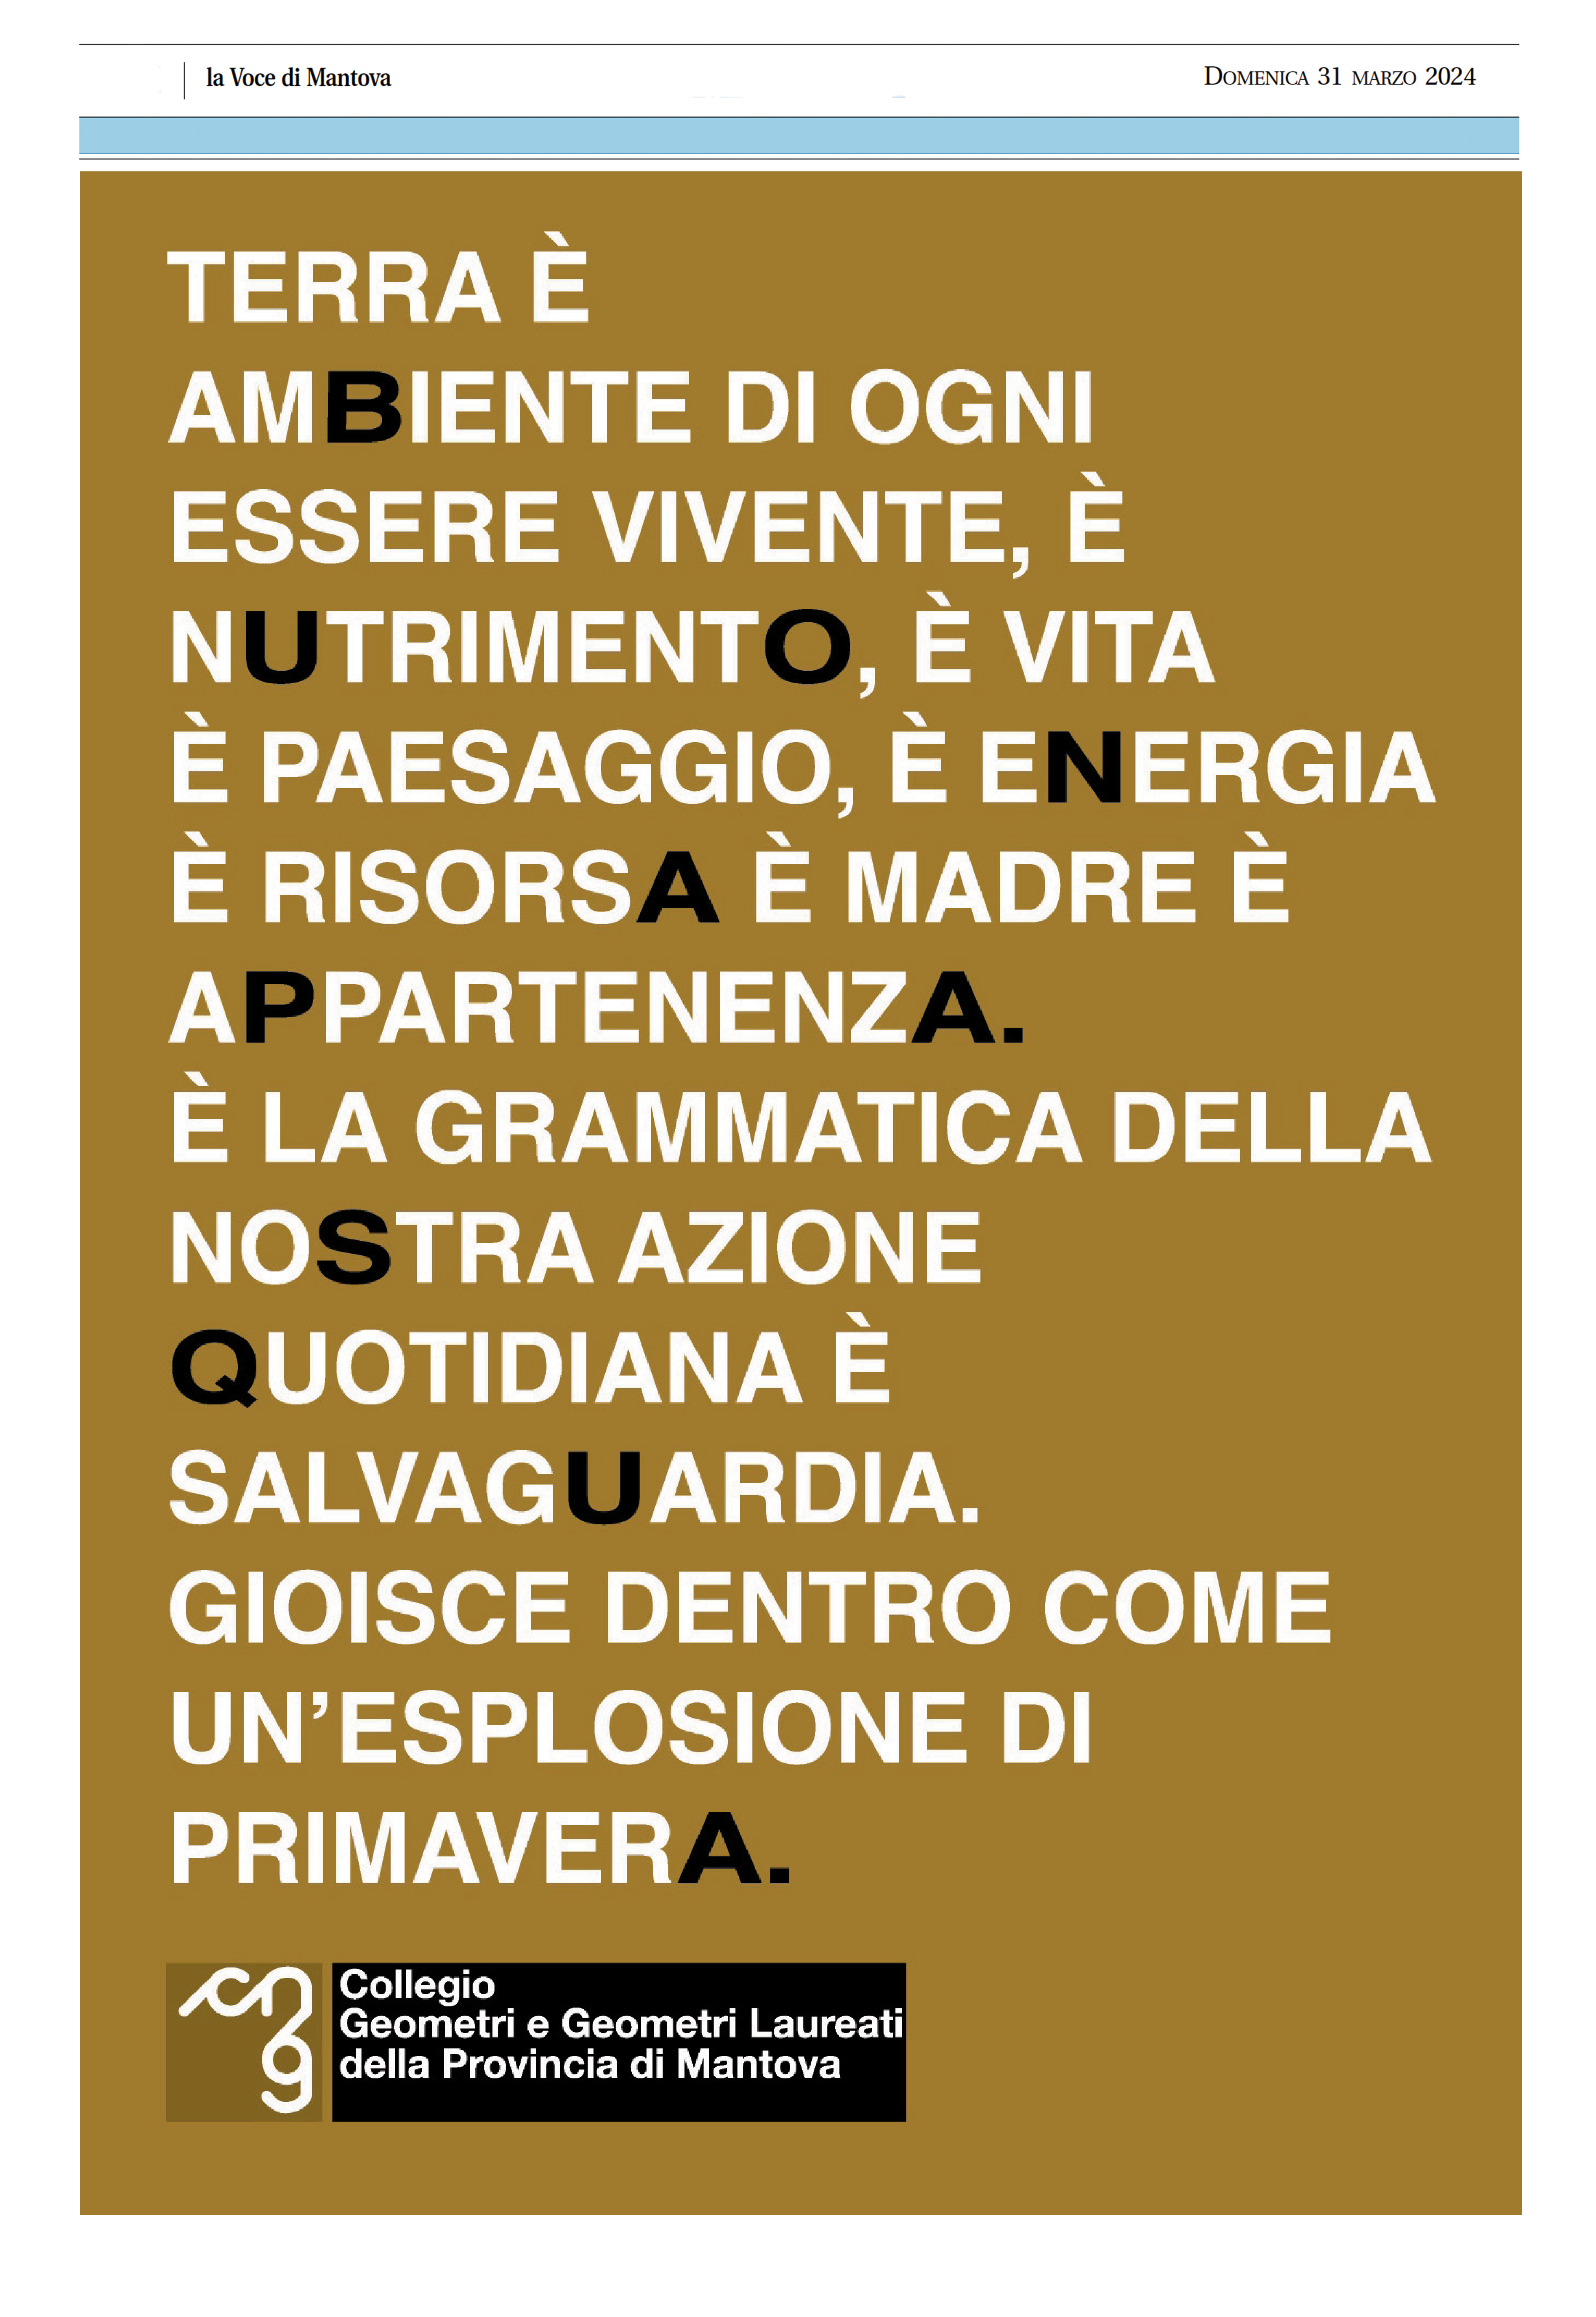 Auguri Festività Pasquali_La Voce di Mantova 31.03.2024